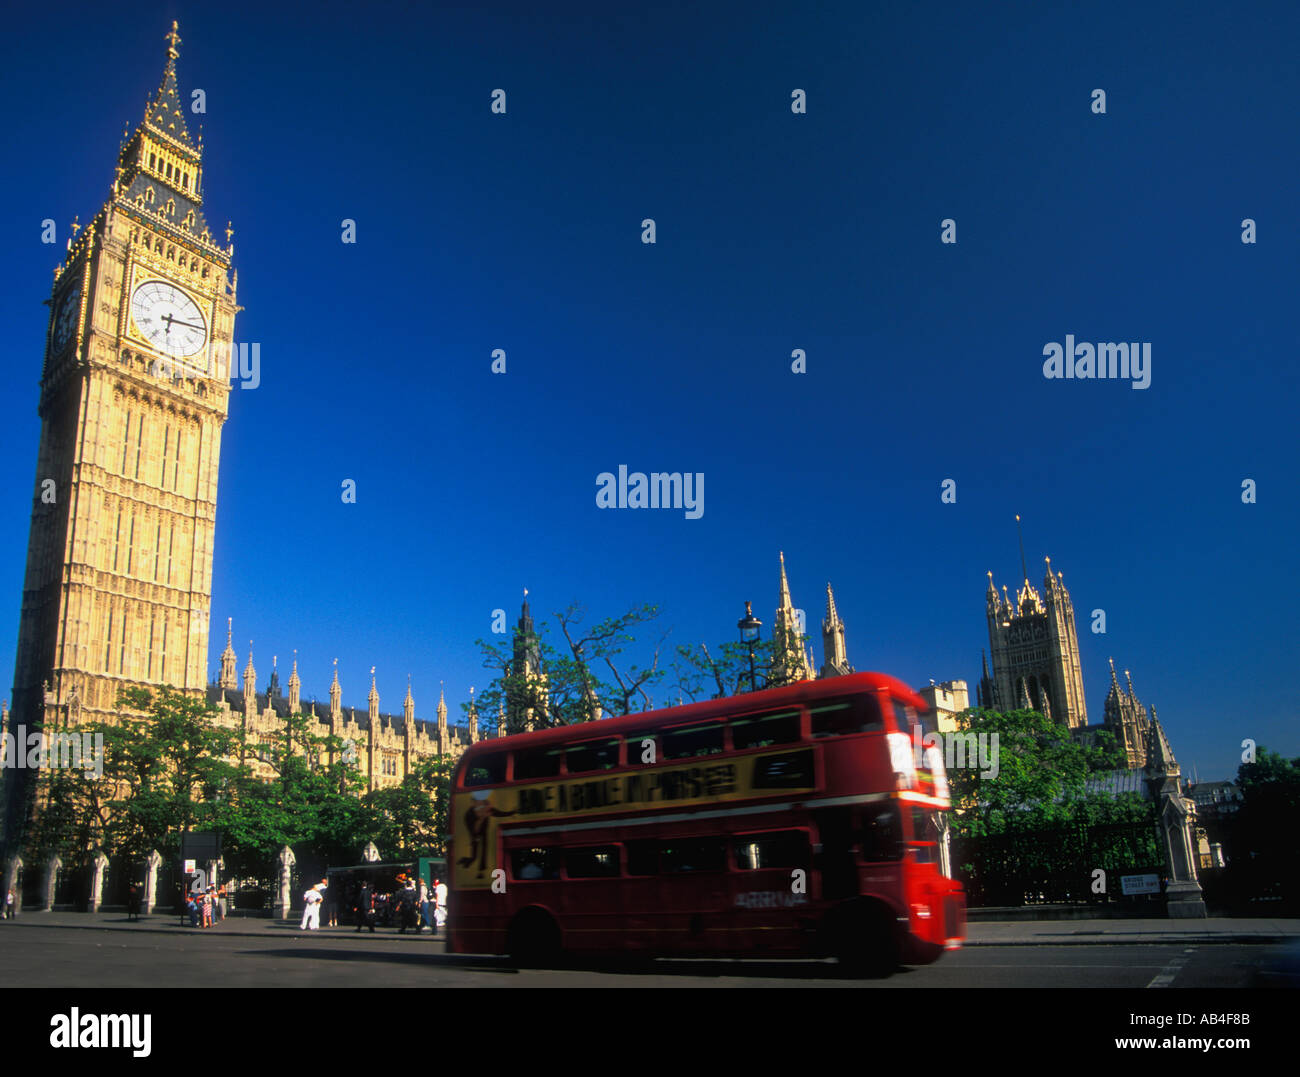 London Big Ben Häuser des Parlaments Westminster England Vereinigtes Königreich Großbritannien GB UK Europe Touristen mit roten bus Stockfoto